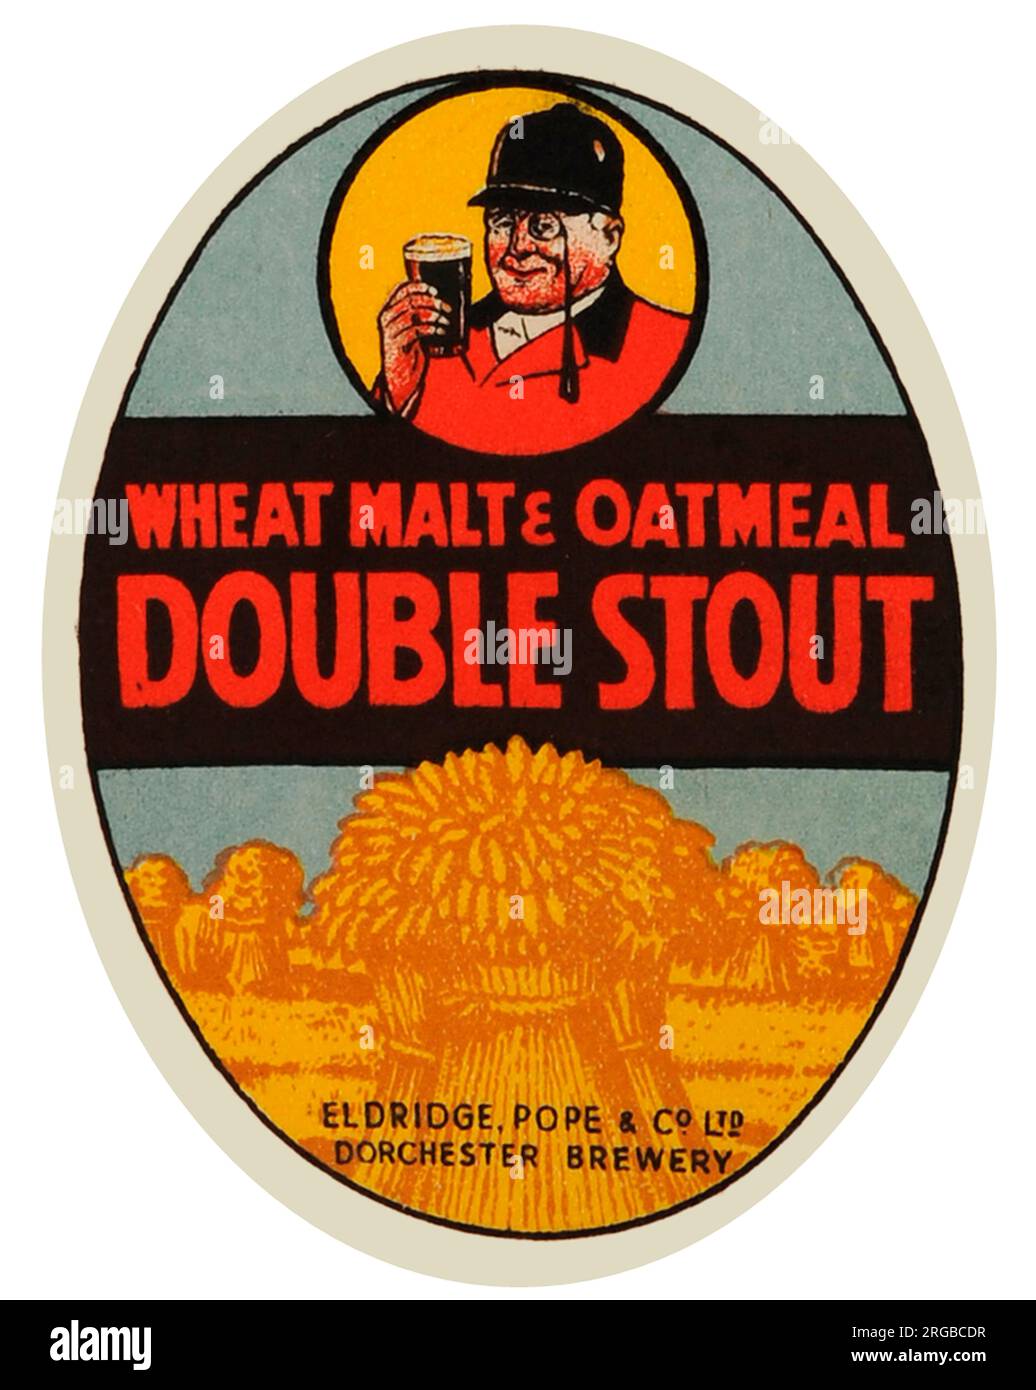 Eldridge Pope's Wheat Malt & Oatmeal Double Stout Foto de stock